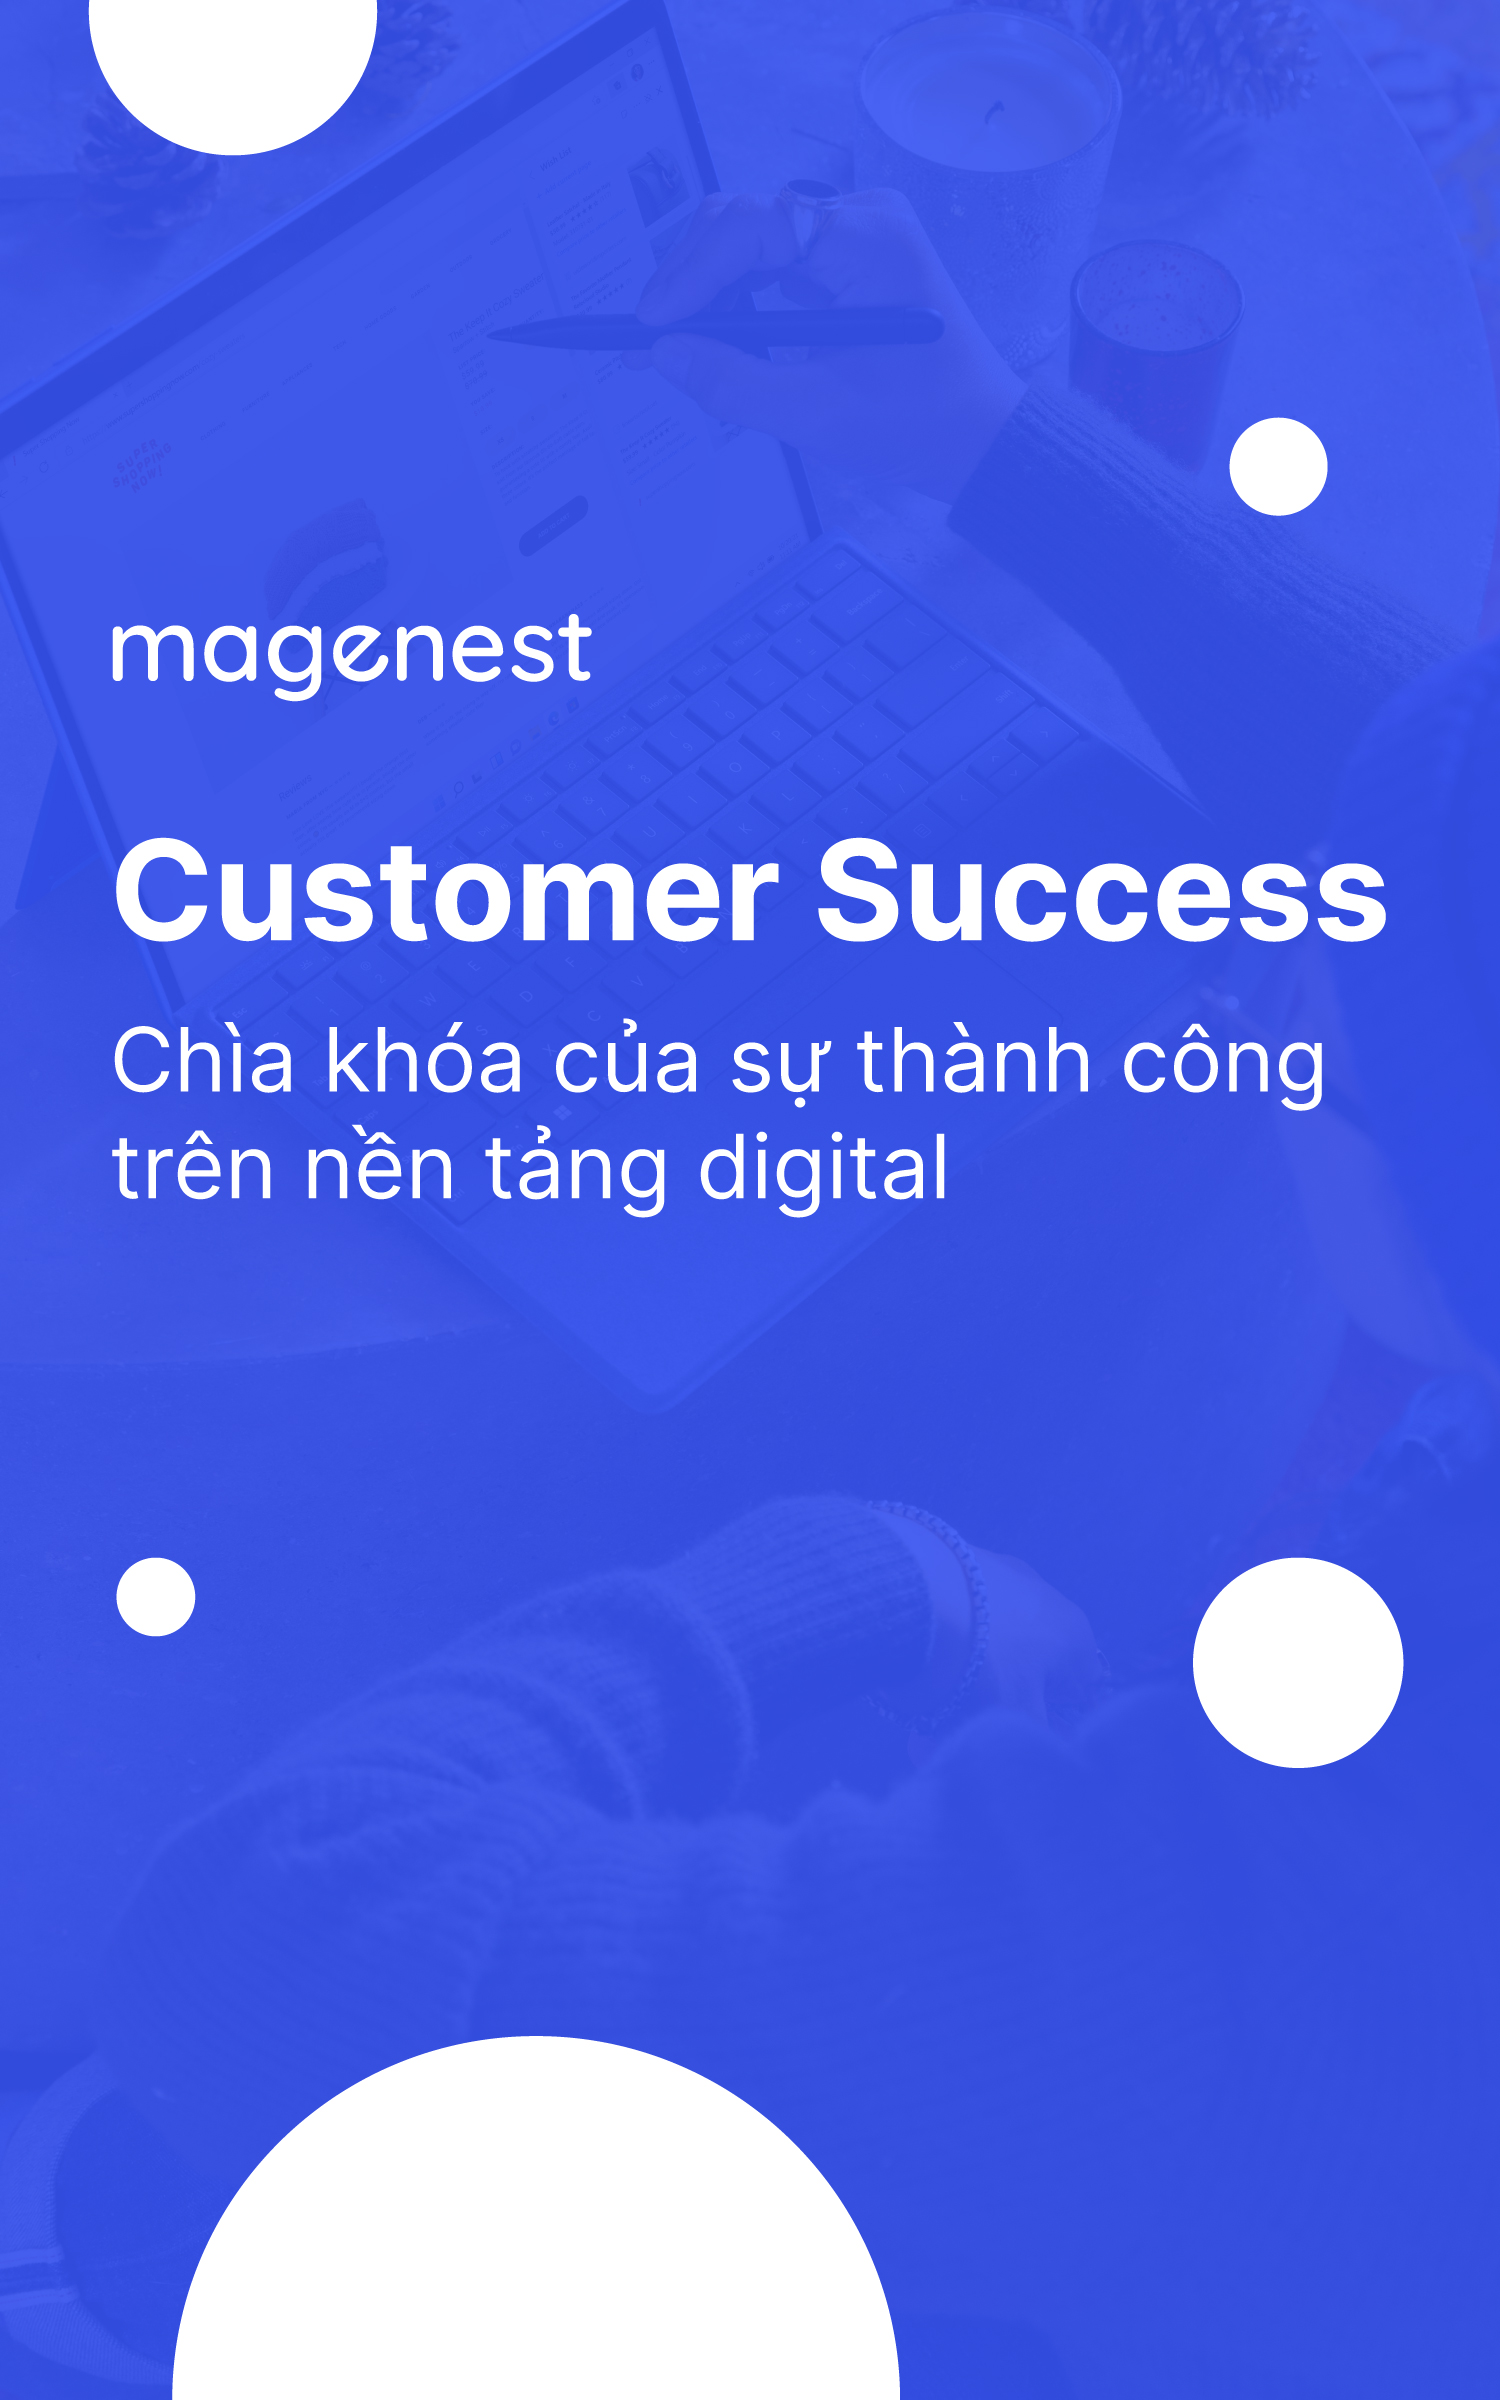 eBook: Customer Success – Chìa khóa của sự thành công trên nền tảng digital0